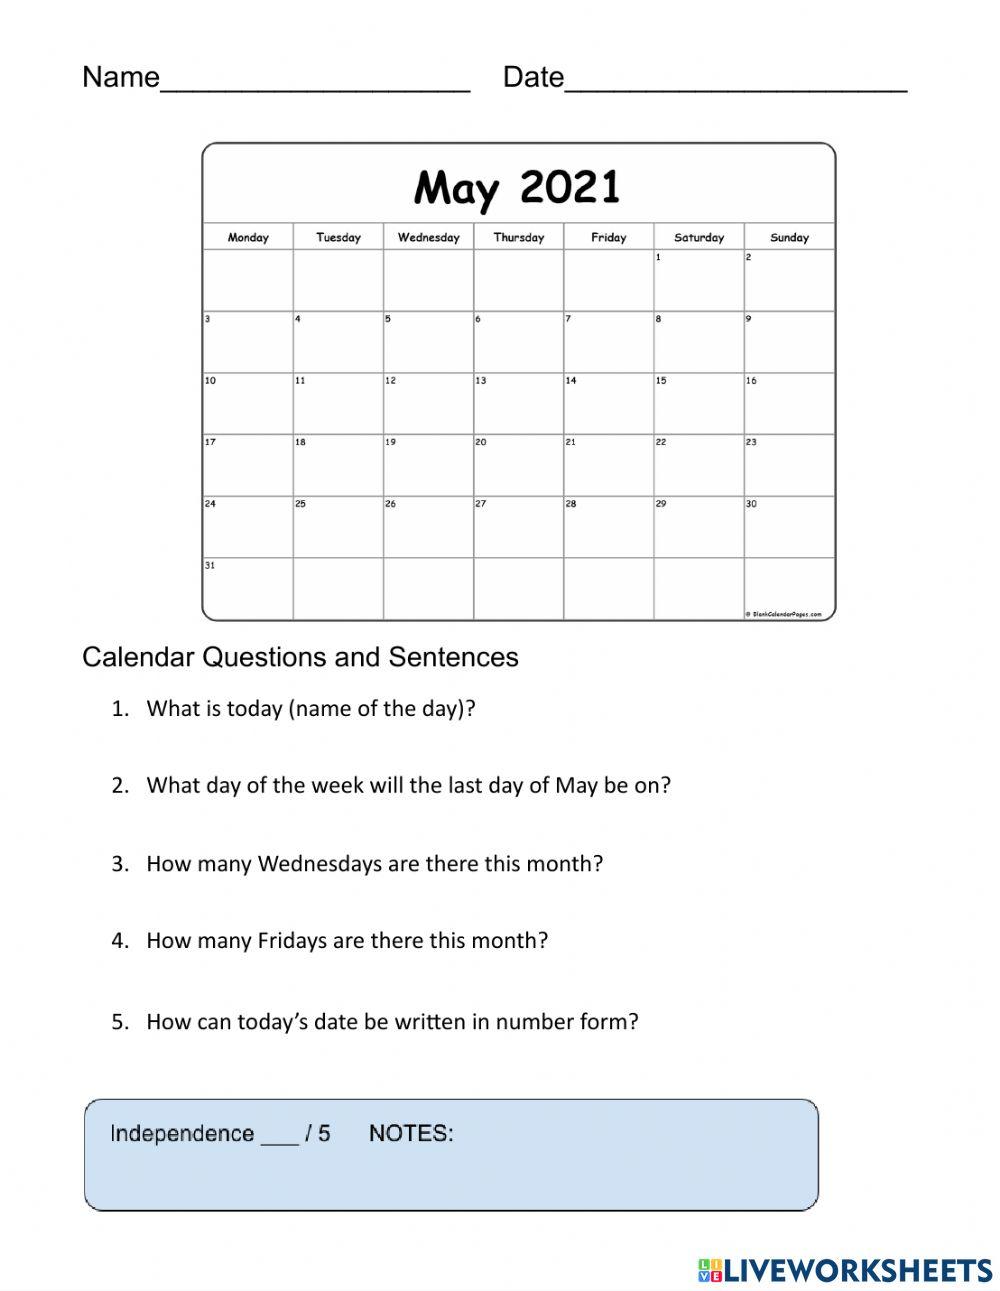 Calendar Worksheet for 5-10-21